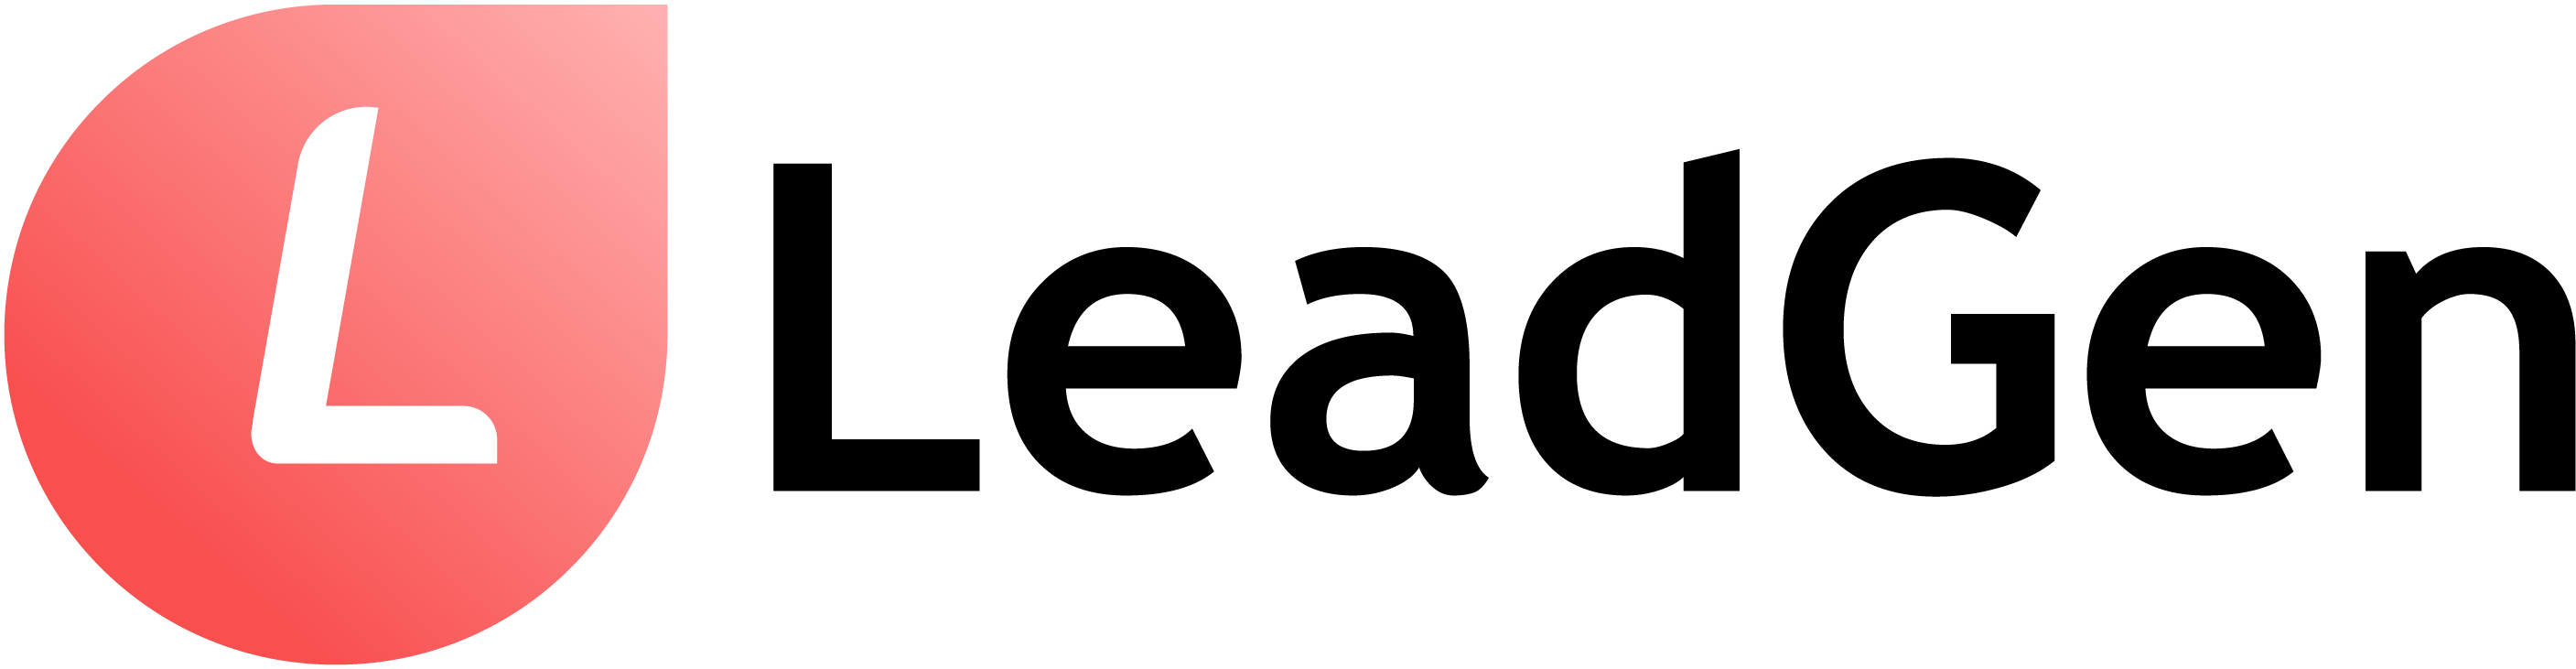 LeadGen logo